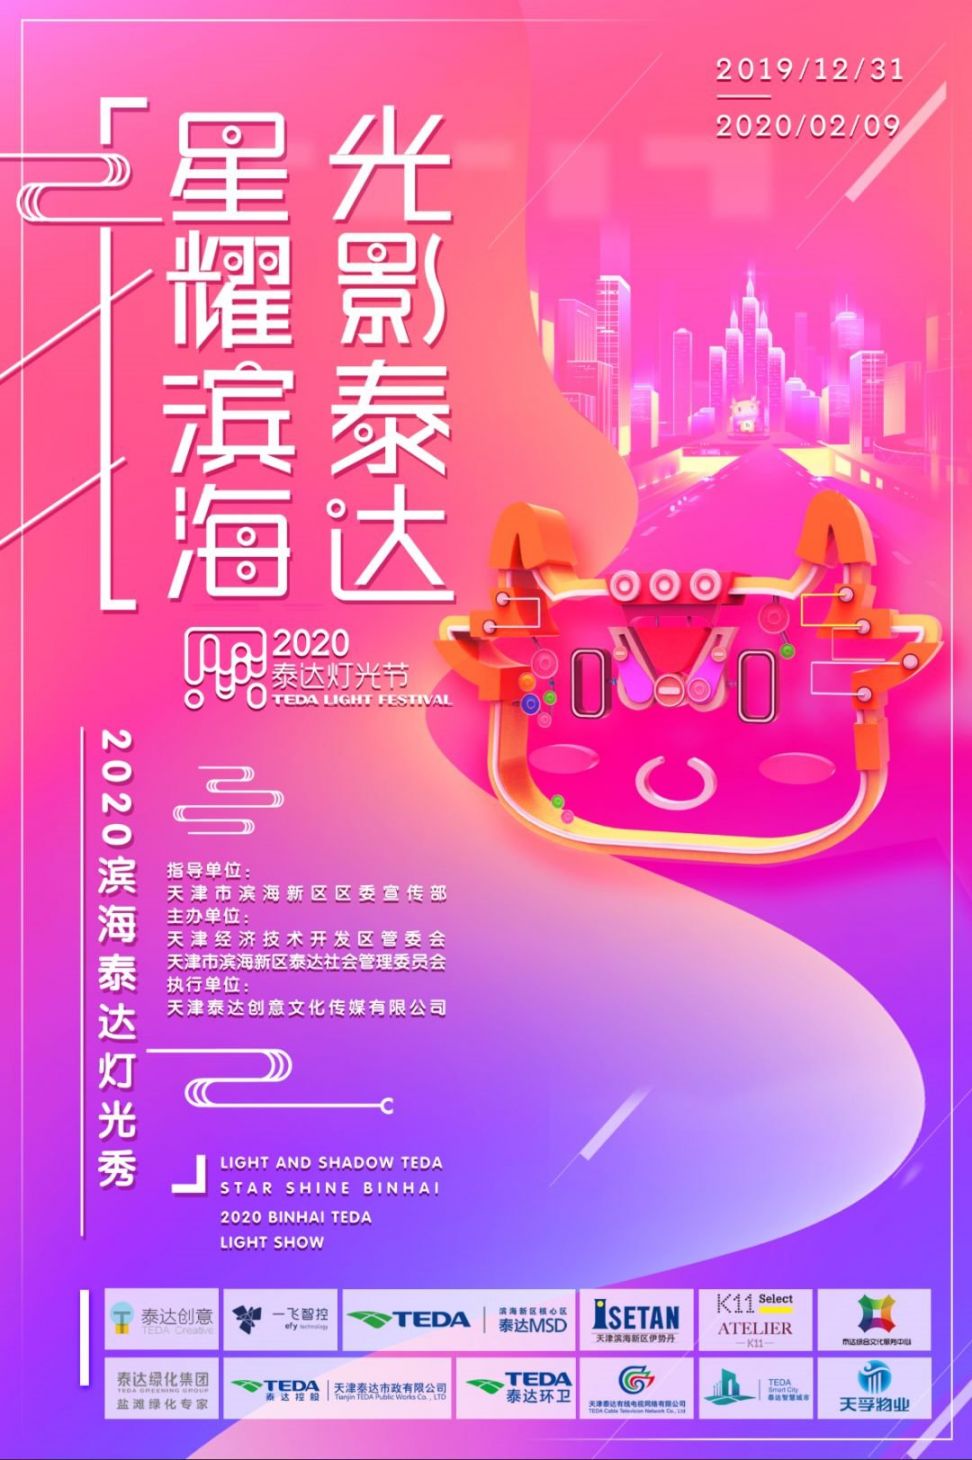 2020天津星耀滨海光影泰达跨年灯光秀时间 地点